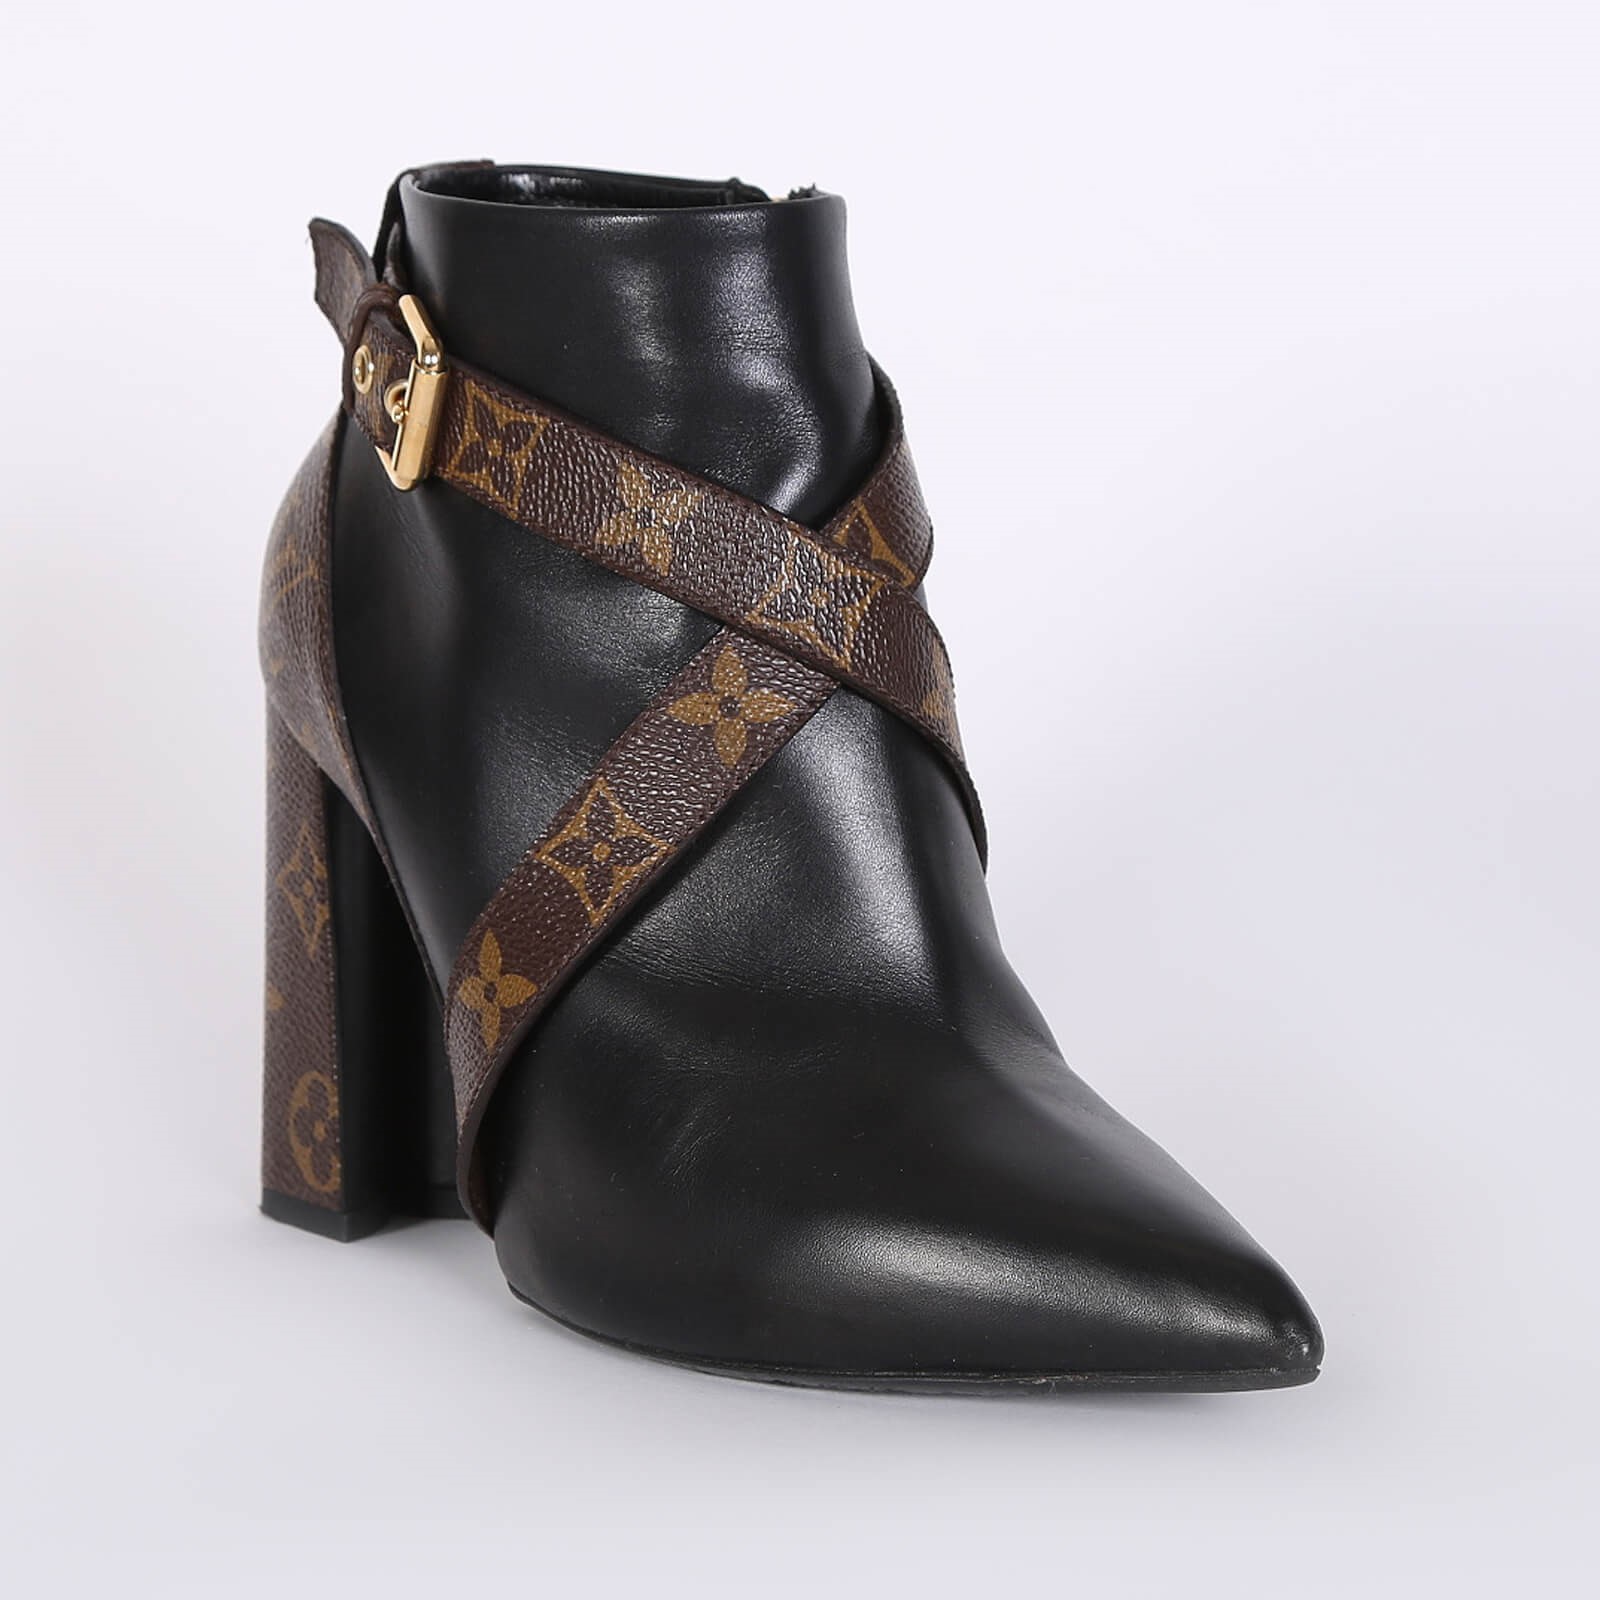 Louis Vuitton Kitten-Heel Ankle Boots